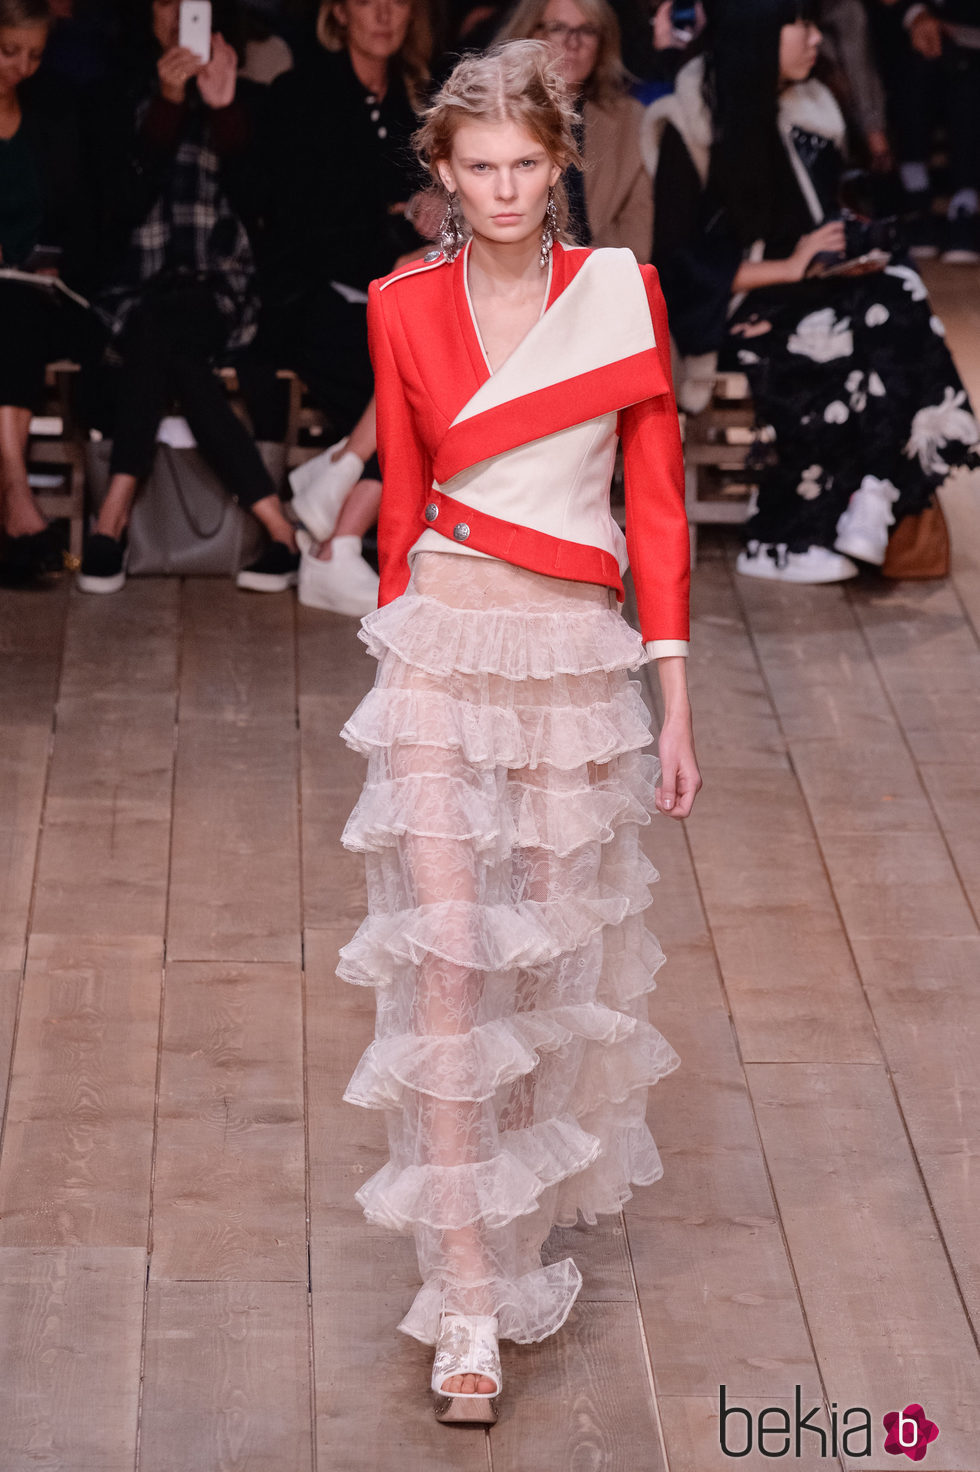 Chaqueta asimétrica y falda de volantes de la nueva colección primavera/verano 2016 de Alexander McQueen en Paris Fashion Week